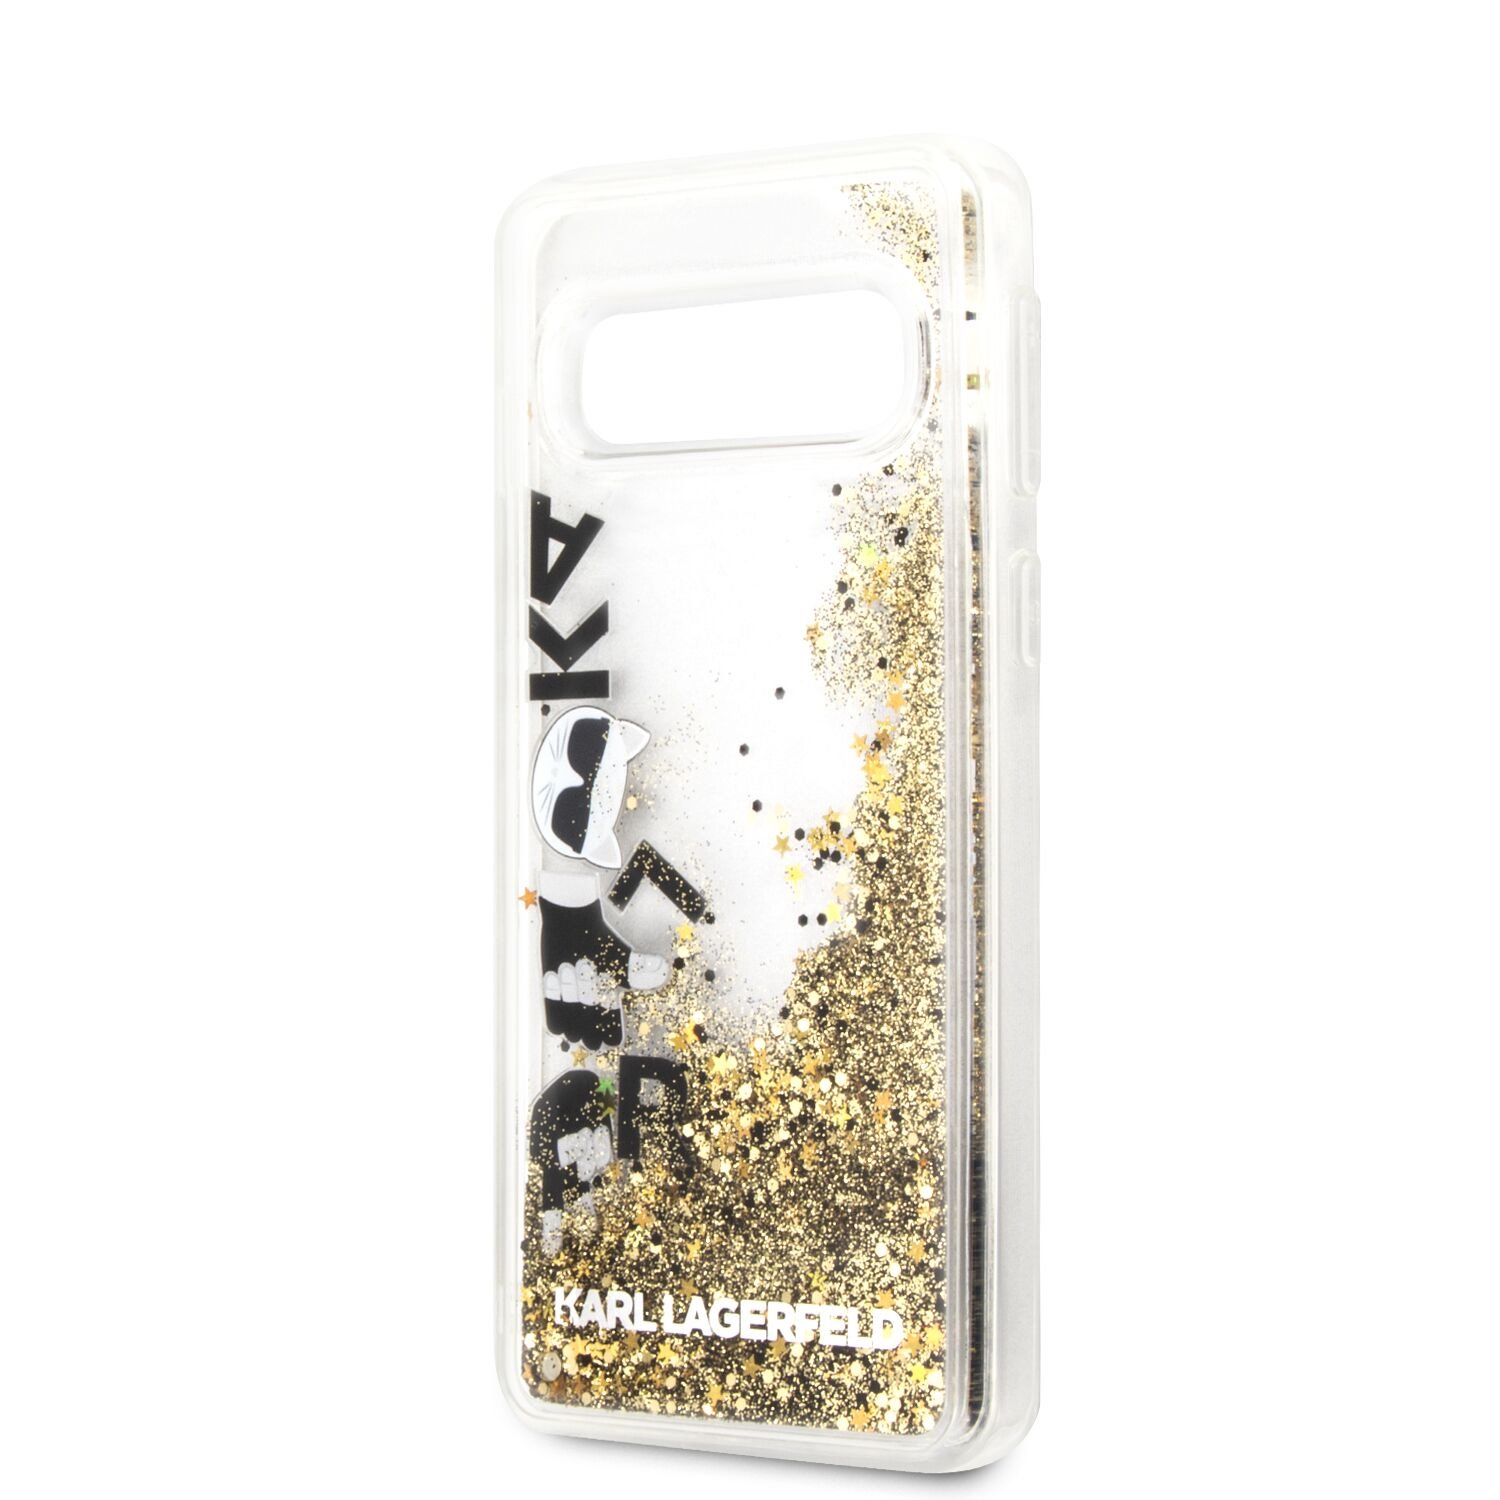 Silikónové puzdro Karl Lagerfeld Glitter Floatting pre Samsung Galaxy S10e, black gold